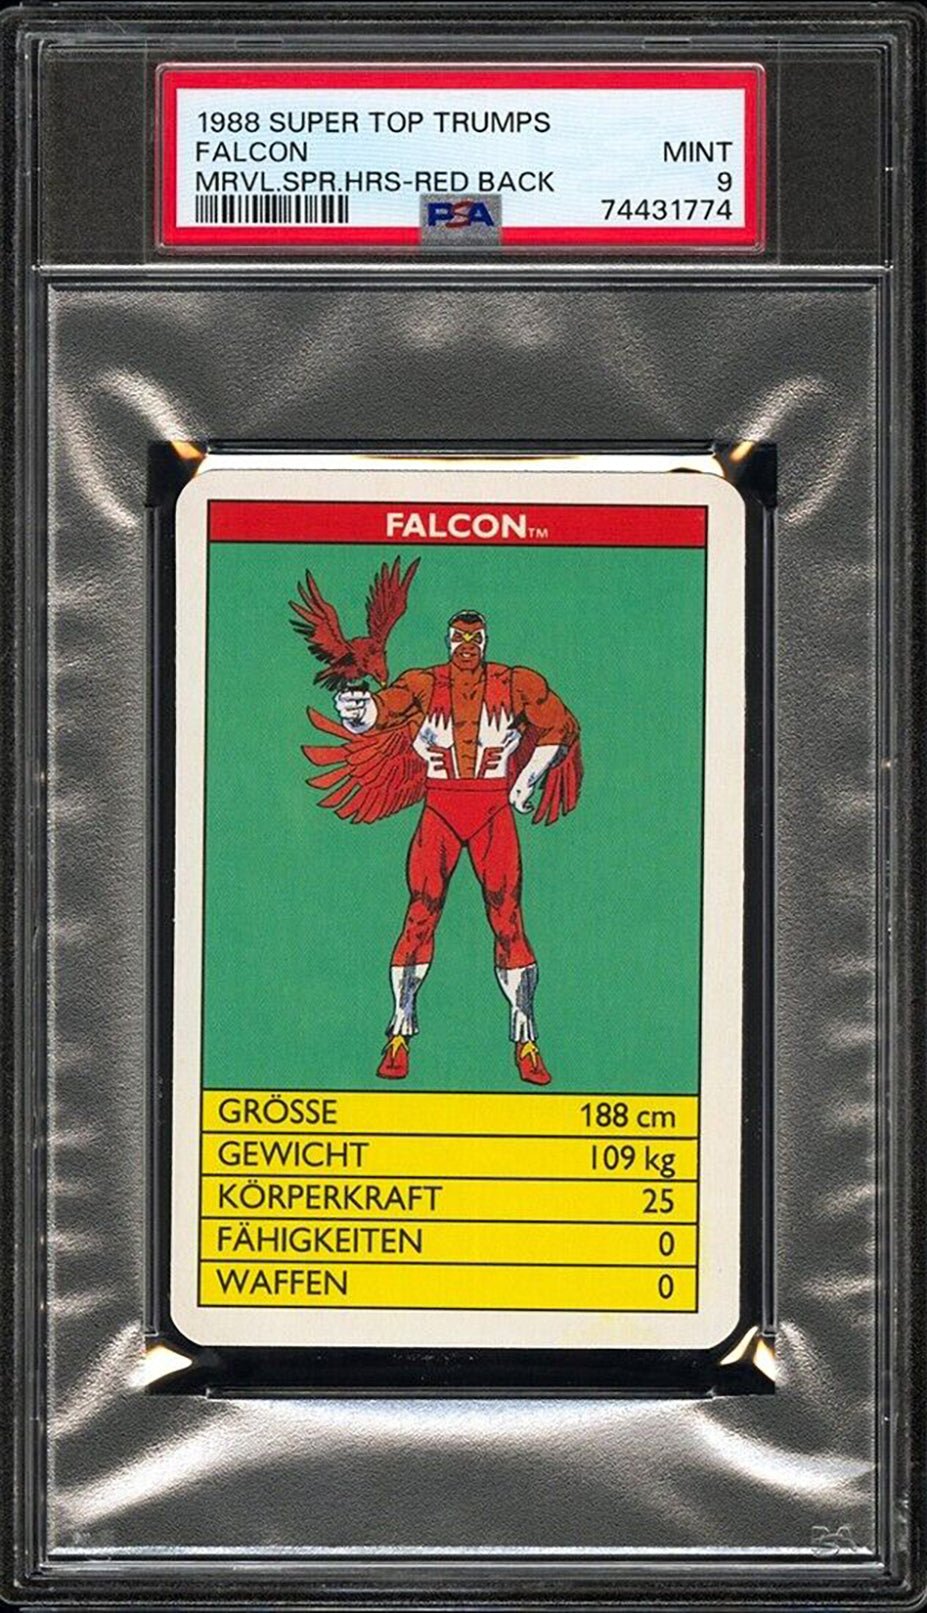 FALCON PSA 9 1988 Super Top Trumps Marvel Super Heroes Red Back C1 Marvel Base Graded Cards - Hobby Gems